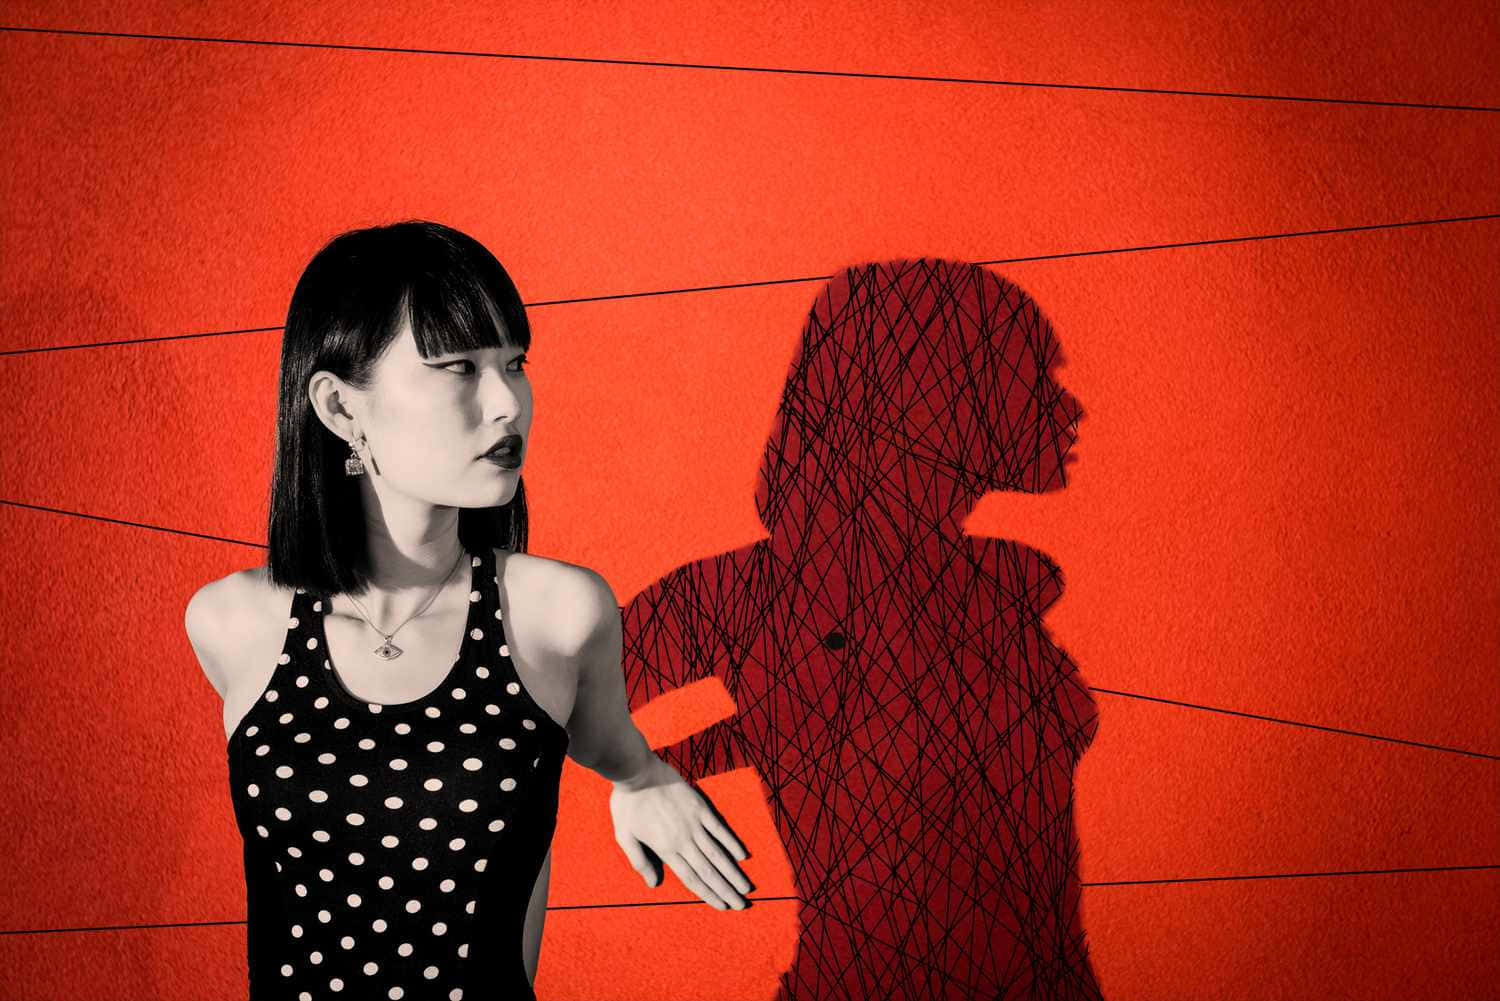 Einefrau Steht Vor Einer Roten Wand Mit Einem Schatten.